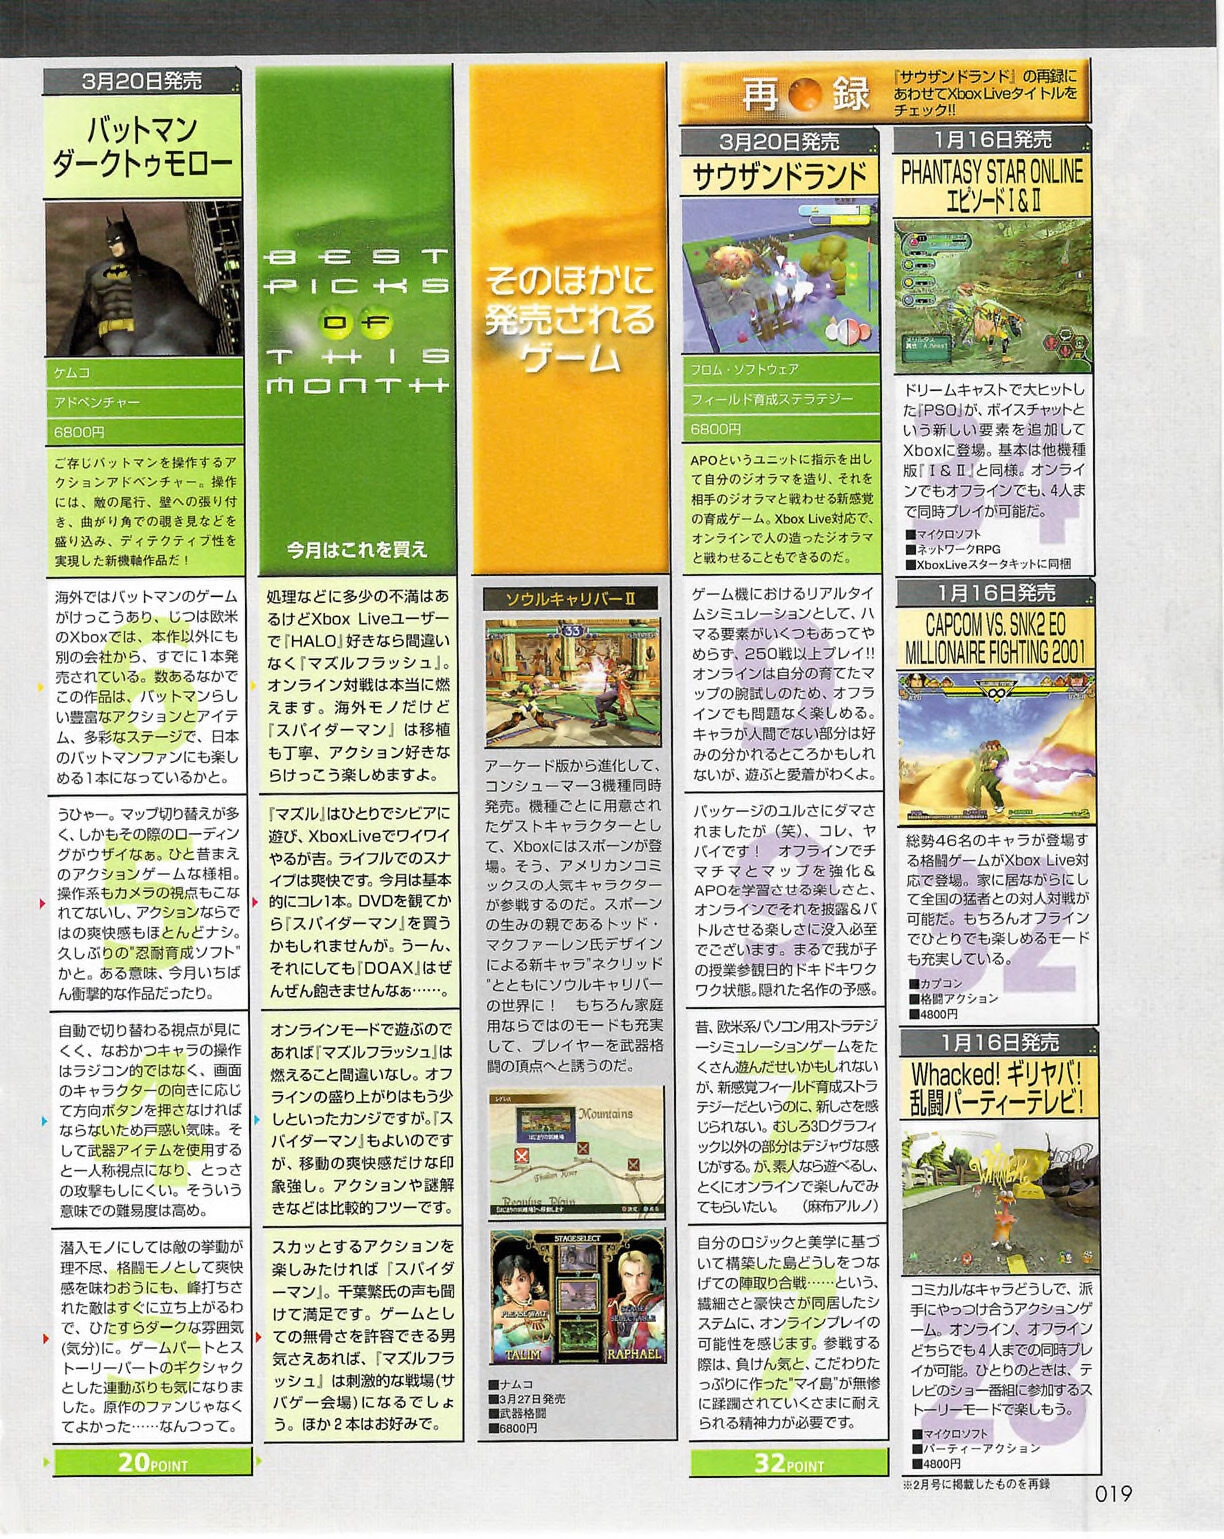 Famitsu_Xbox_2003-04_jp2 18